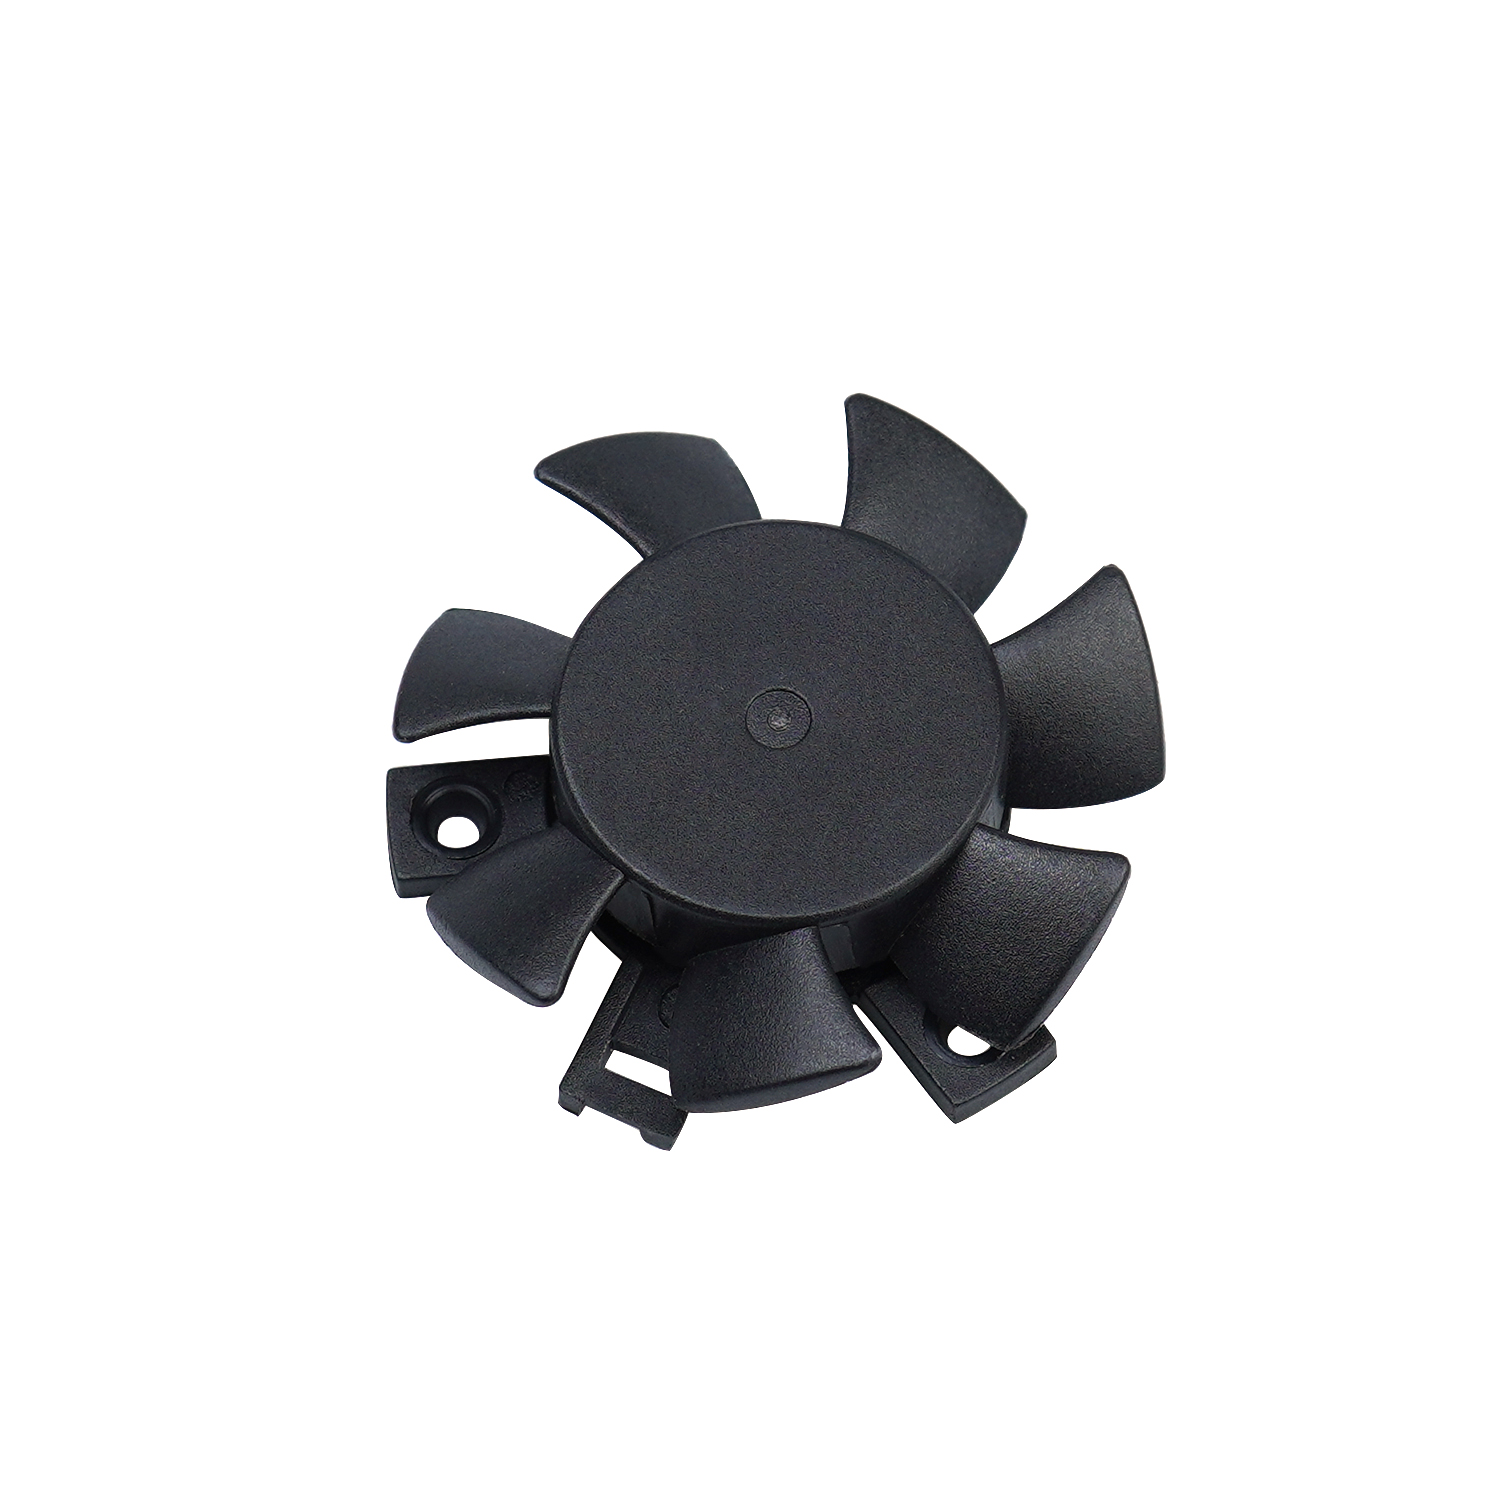 40x10mm 5v 4010 mini brushless high quality frameless dc fan